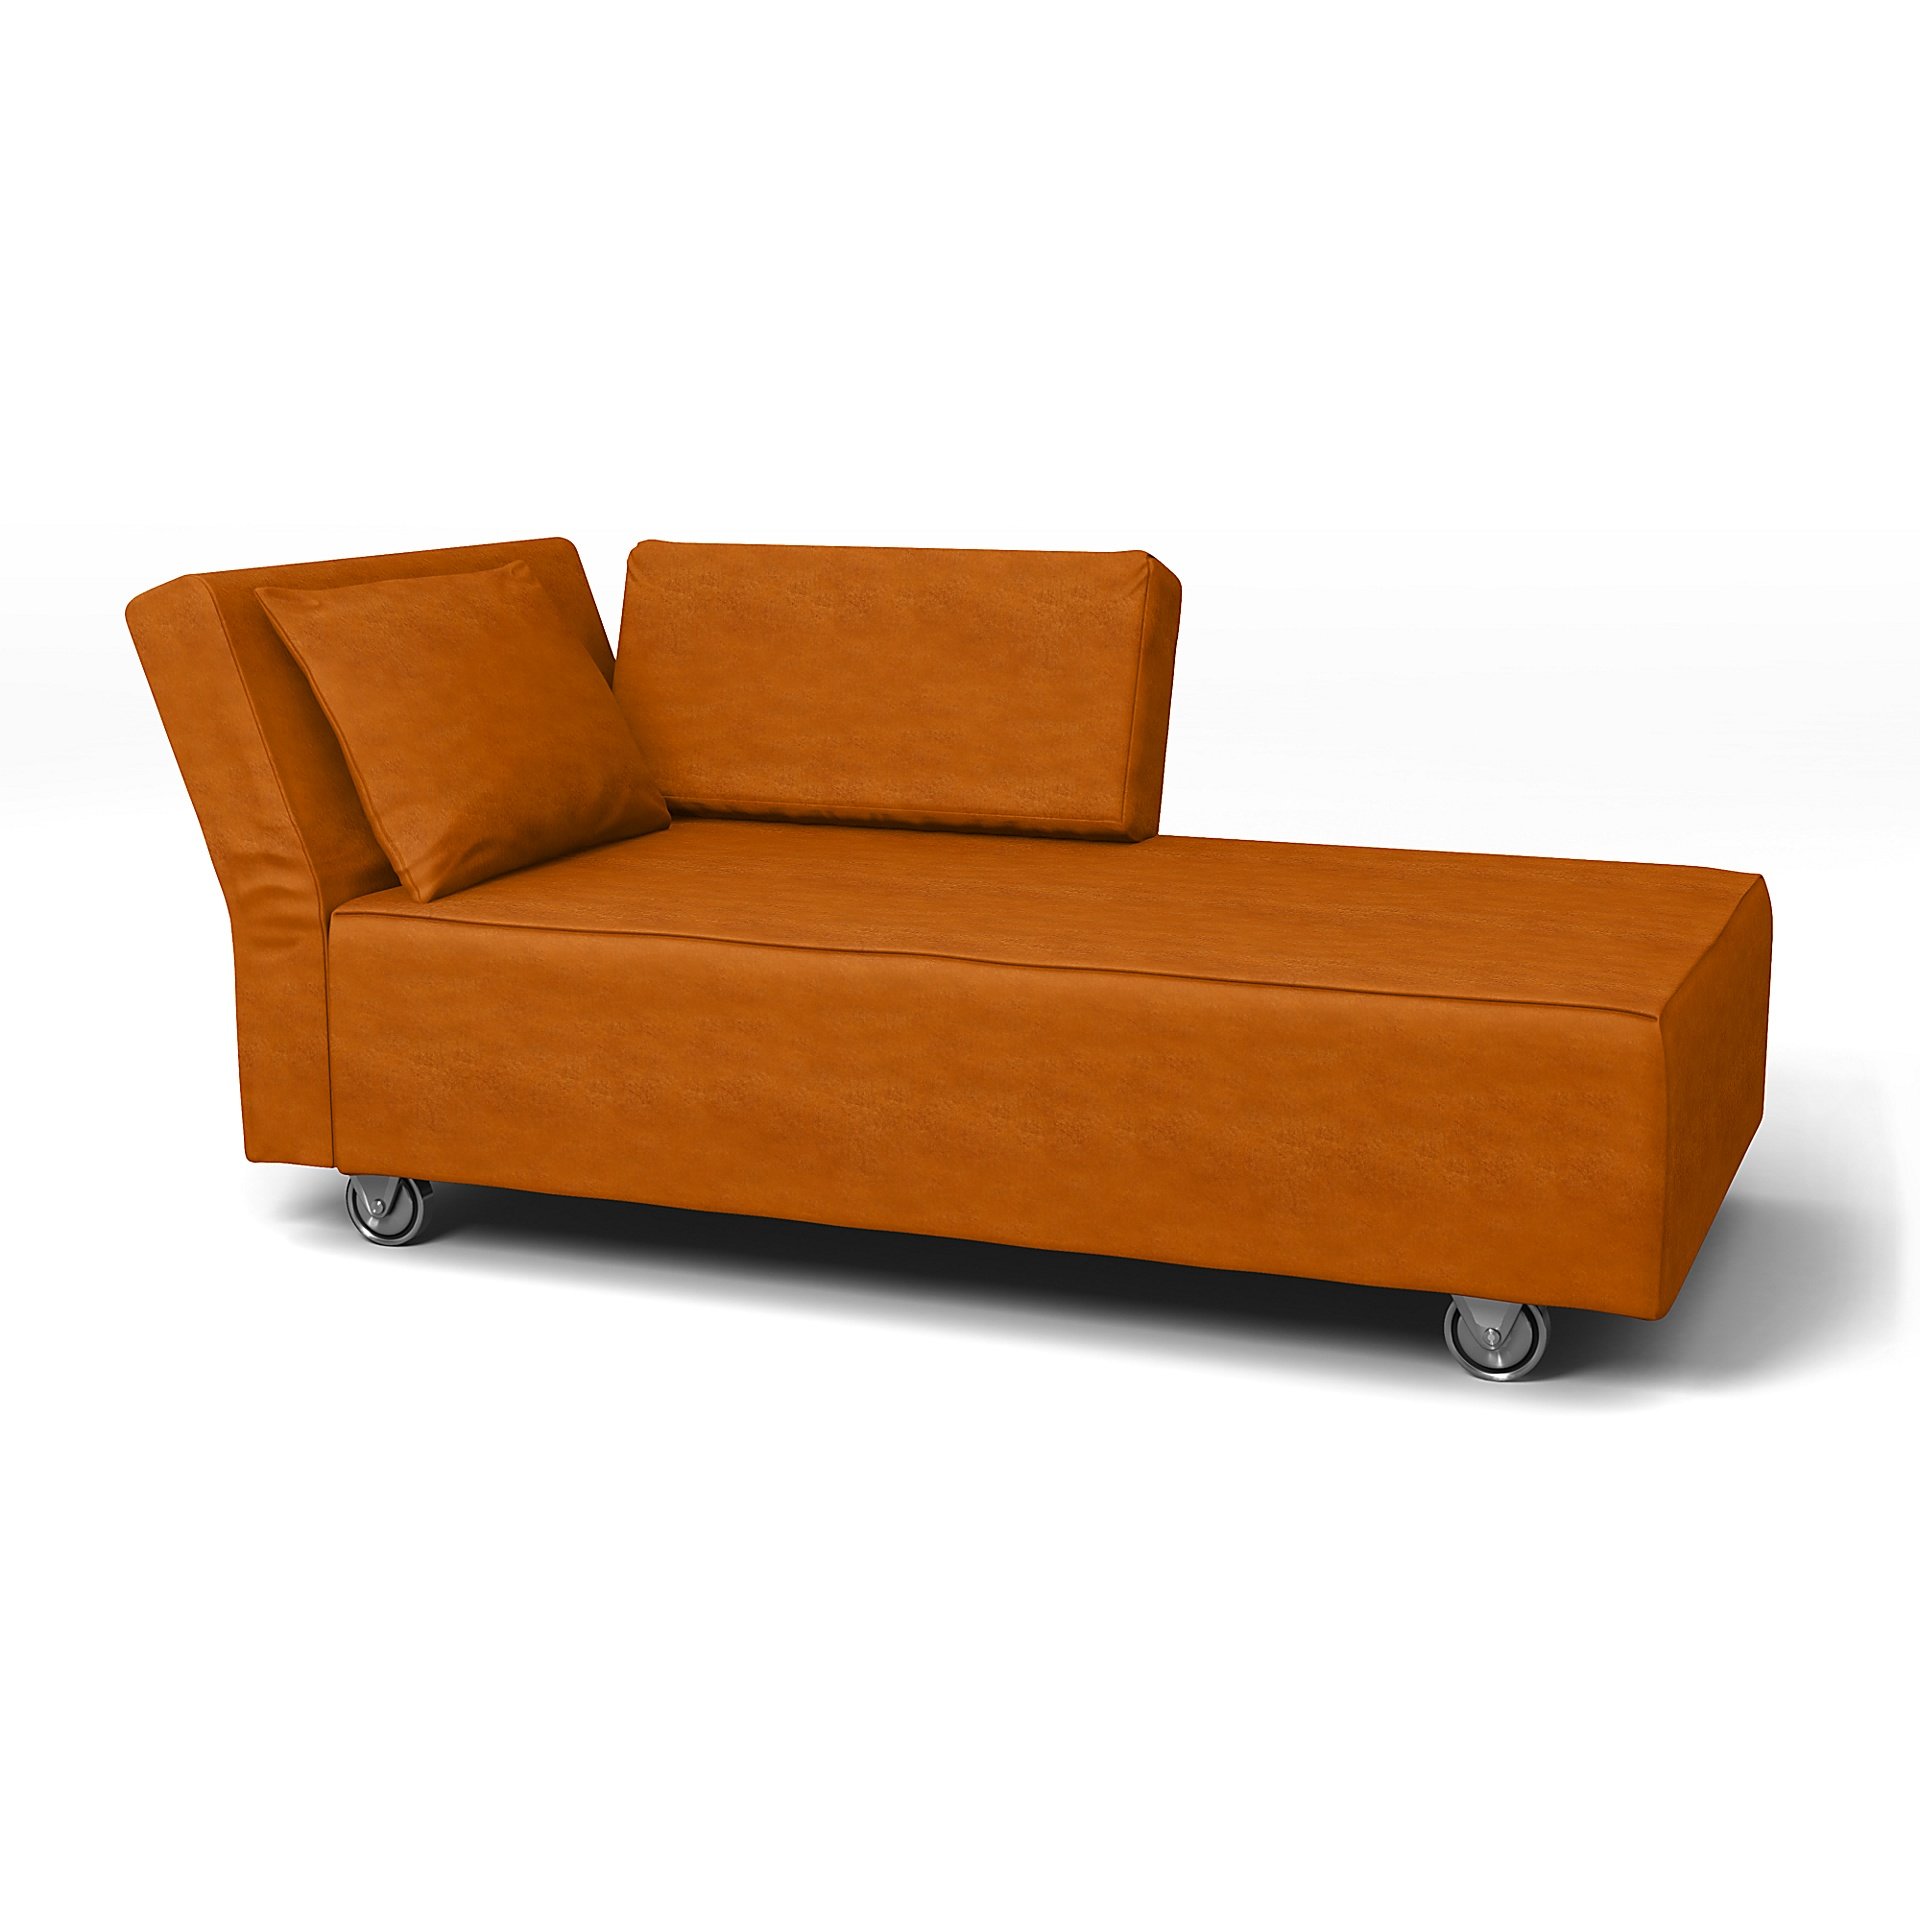 IKEA - Falsterbo Chaise with Left Armrest Cover, Cognac, Velvet - Bemz